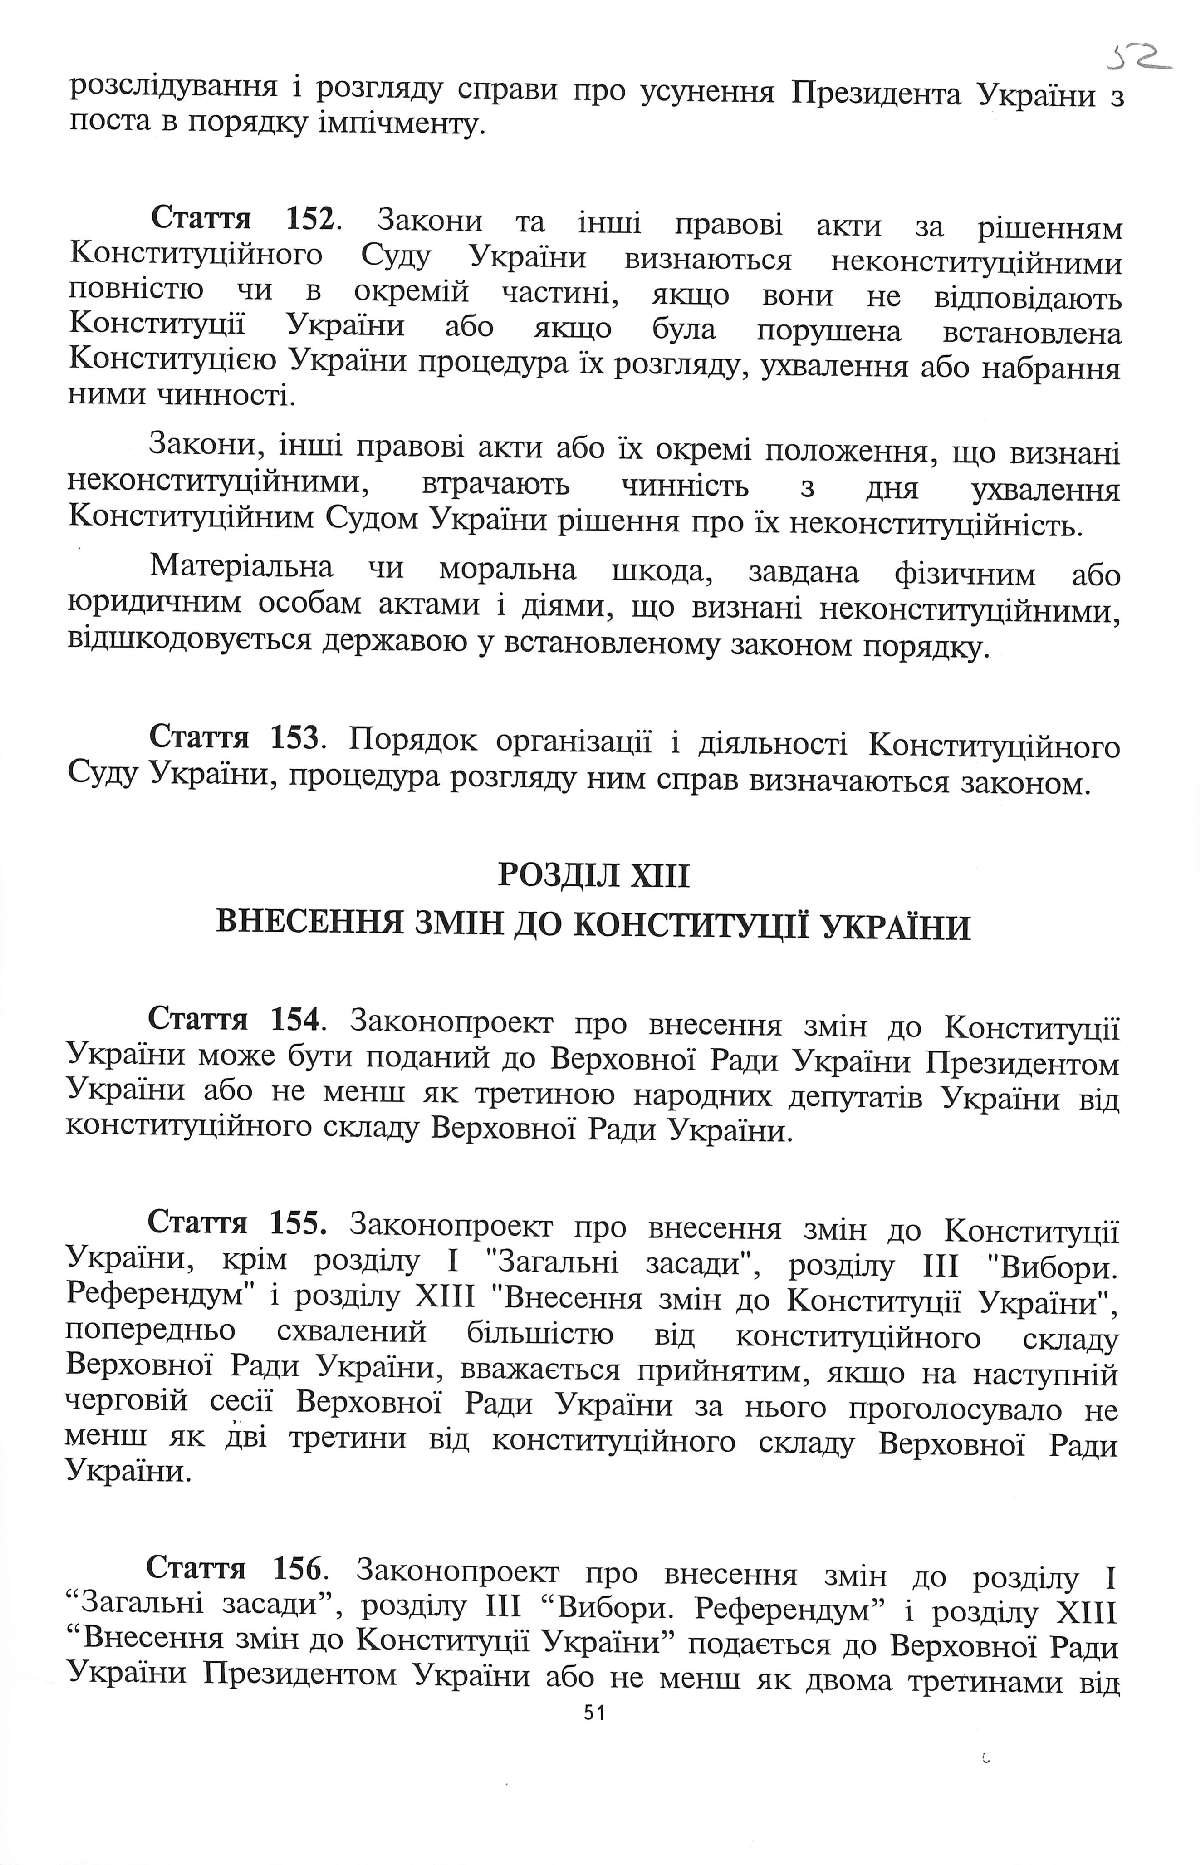 Конституція України. Київ, 28 червня 1996 р.